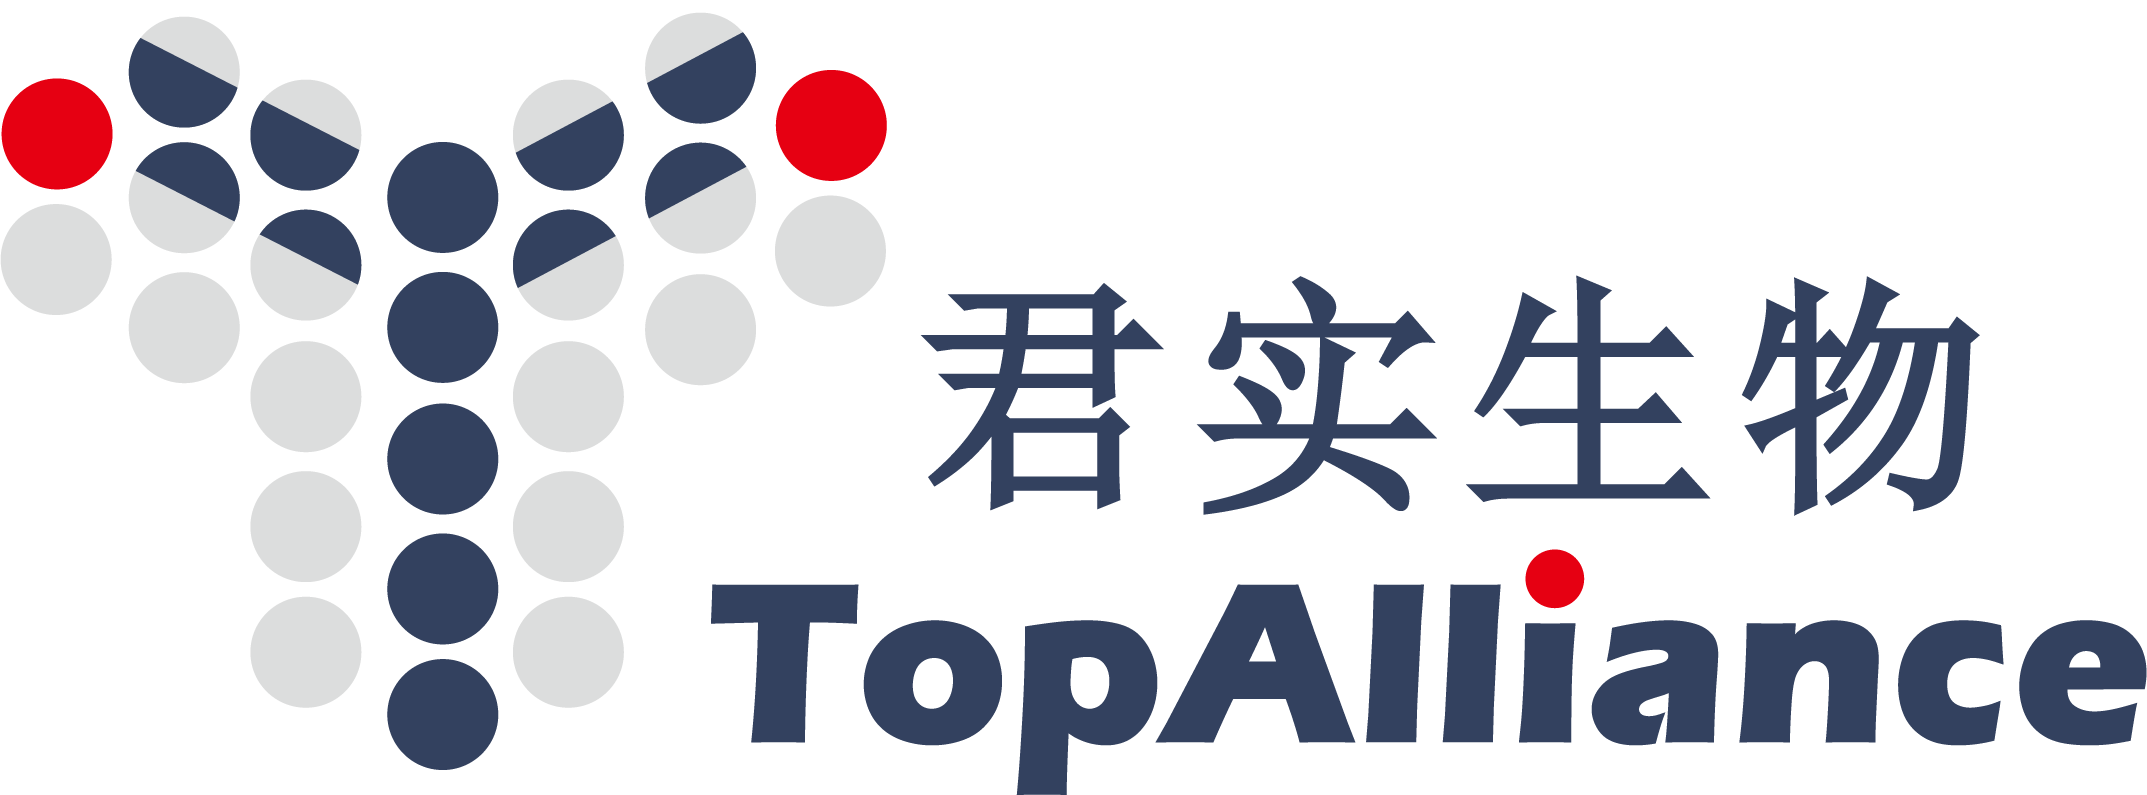 Junshi Topalliance logo.png